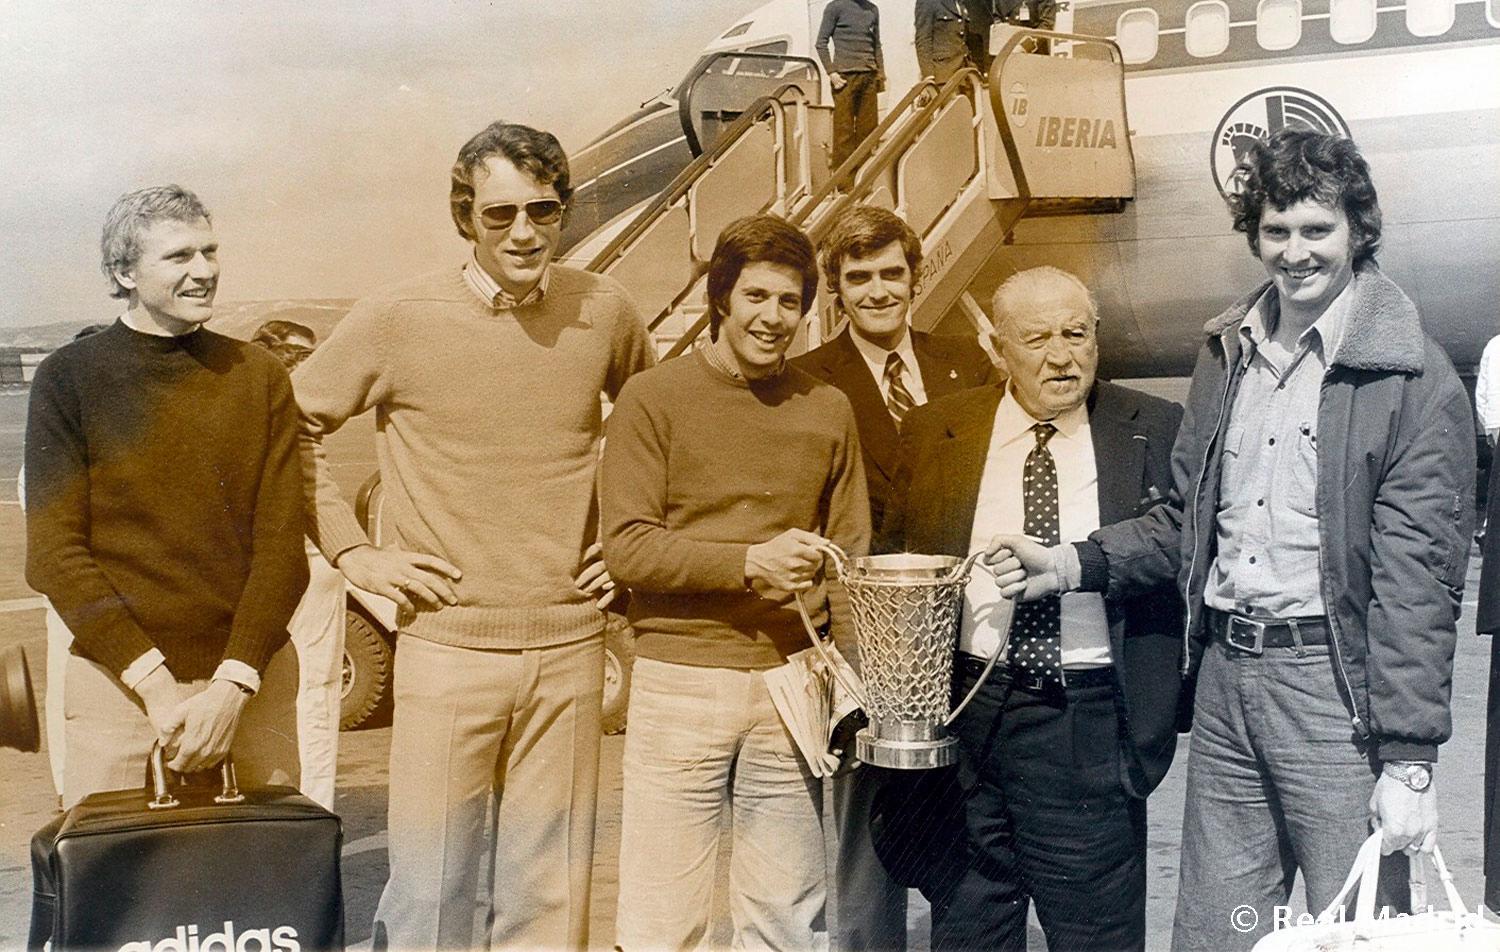 Entrañable foto de Paniagua en la que aparece junto a Bernabeu, Lolo Sainz, Clifford Luyk, Cabrera y Brabender tras conquistar una Copa de Europa